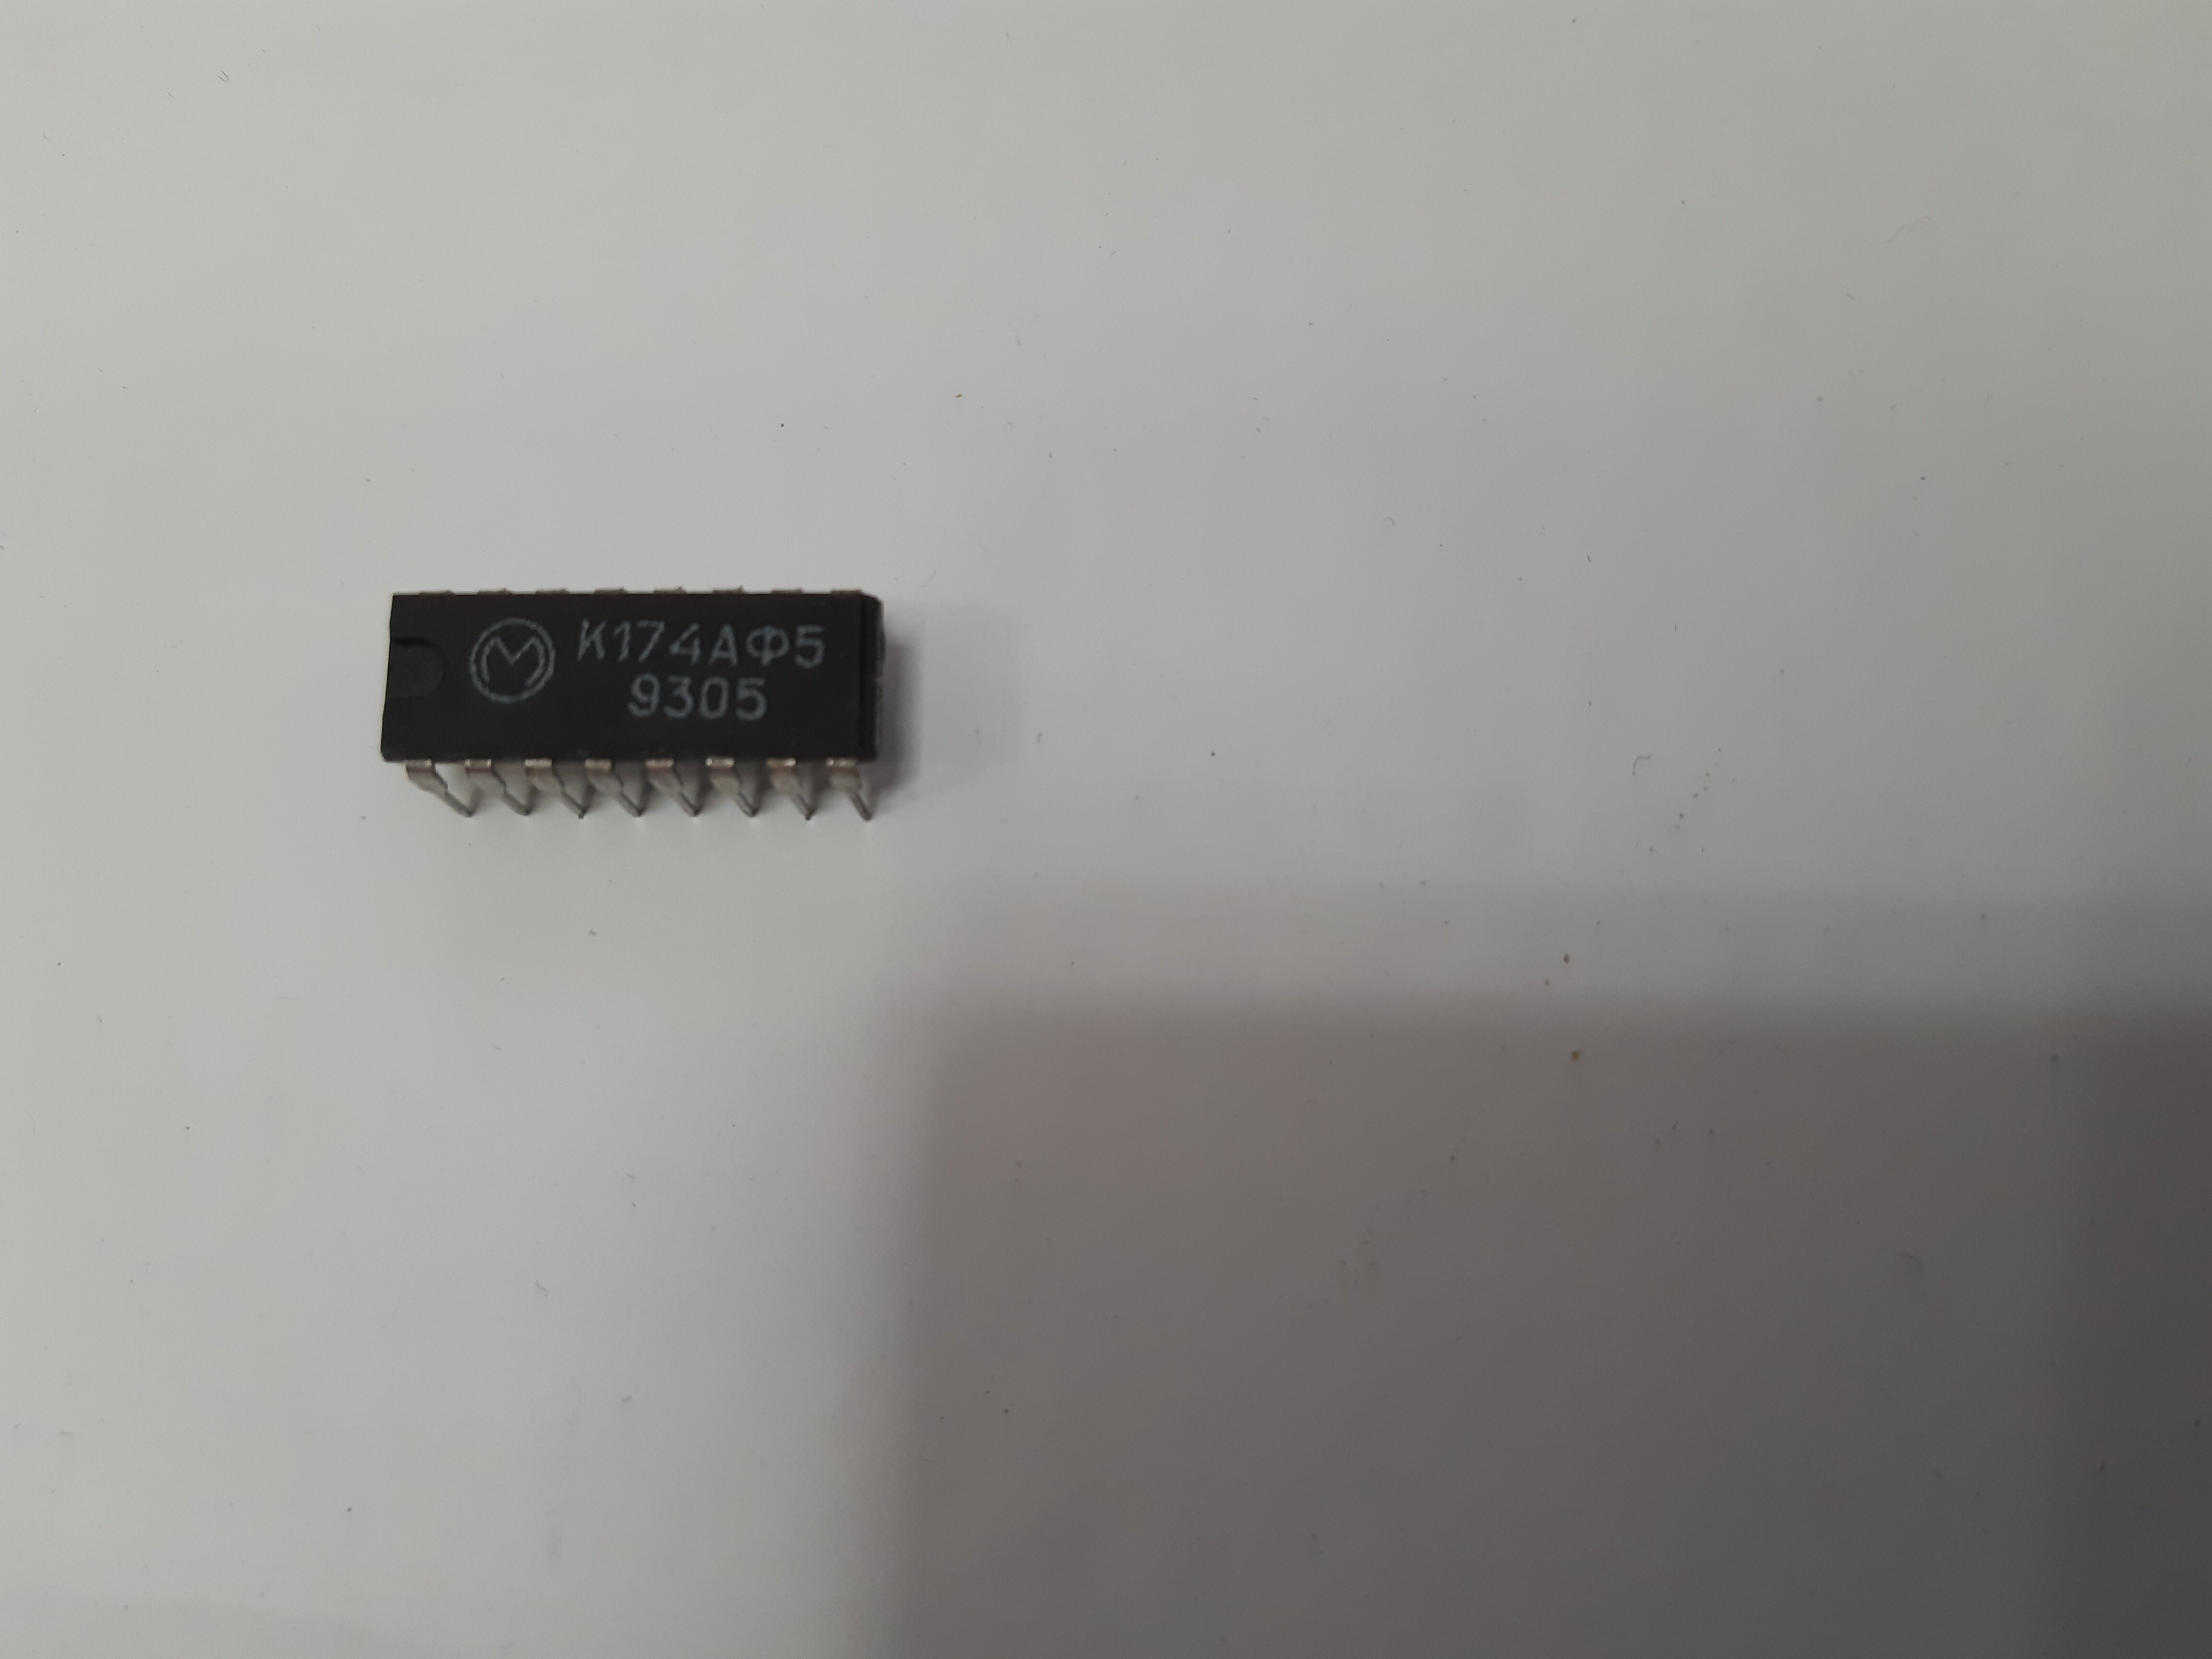 Микросхема К174АФ5 (1993г) (упаковка 5 штук)